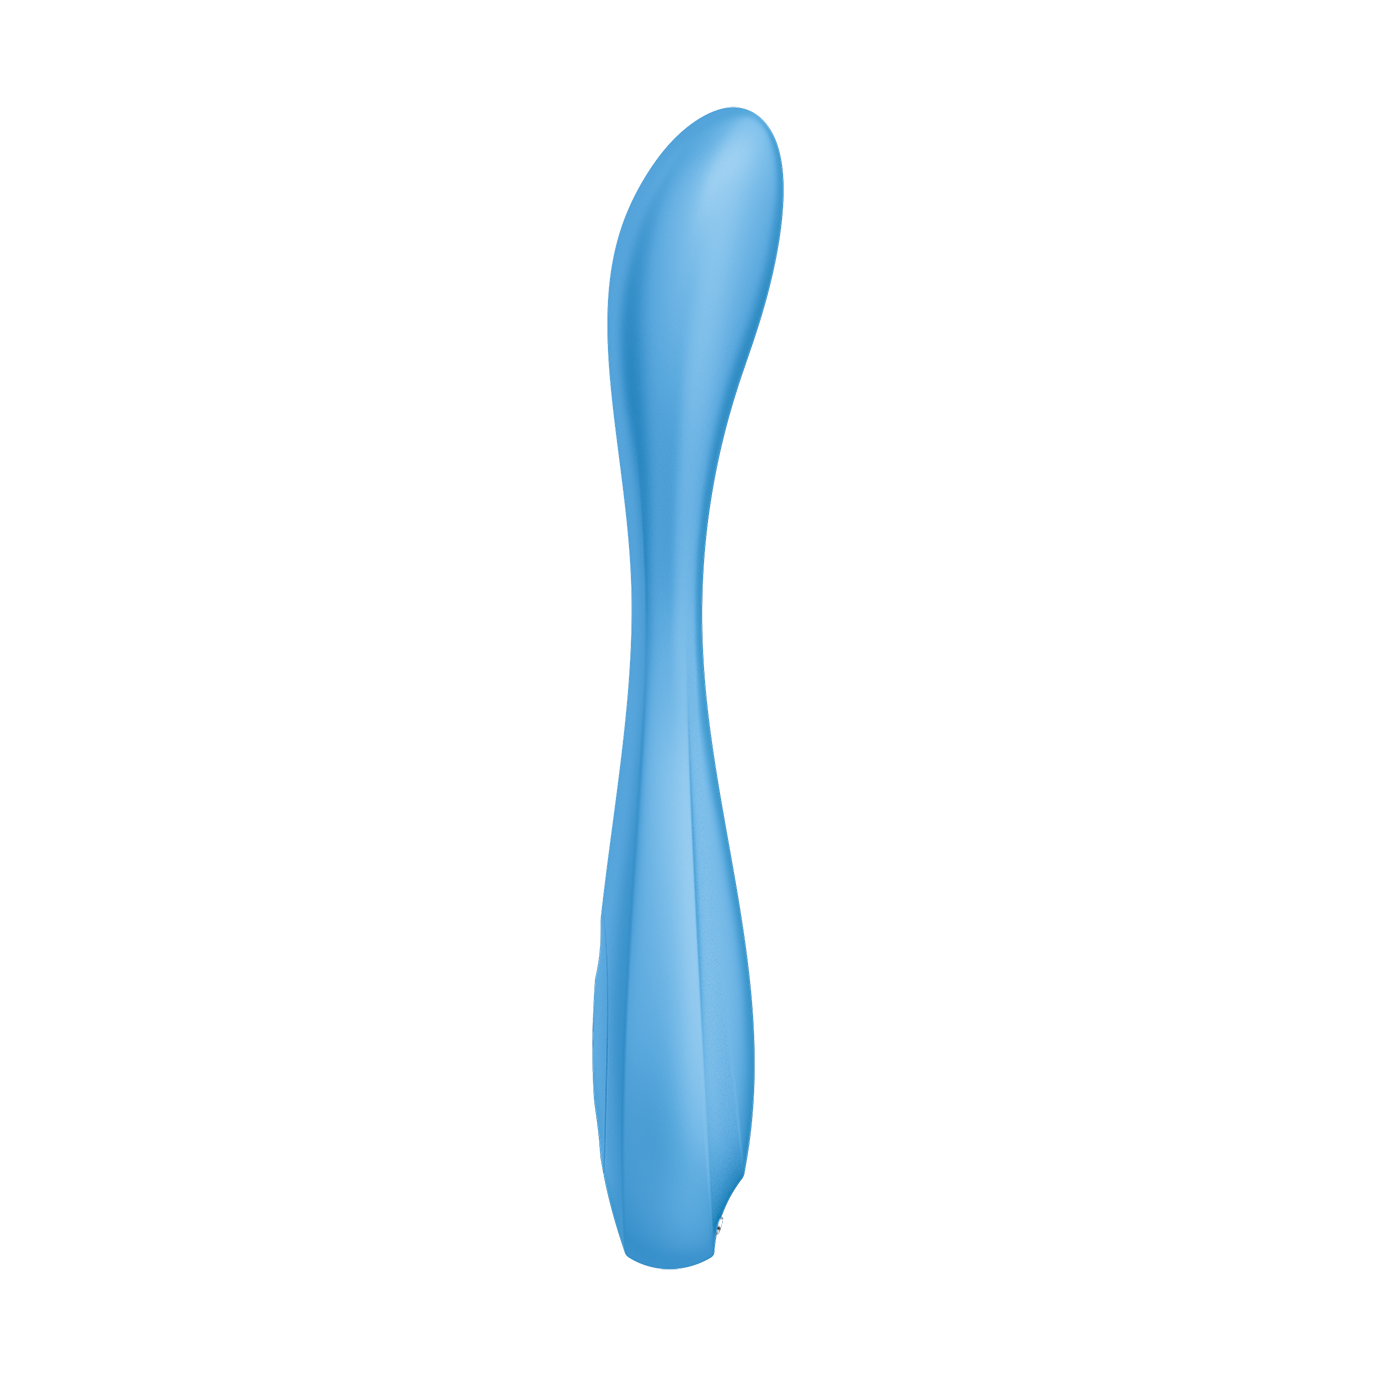 Vista lateral del Satisfyer G-Spot Flex 4, resaltando su perfil delgado y su forma ondulada que favorece la estimulación interna, en un tono azul uniforme sobre fondo blanco.